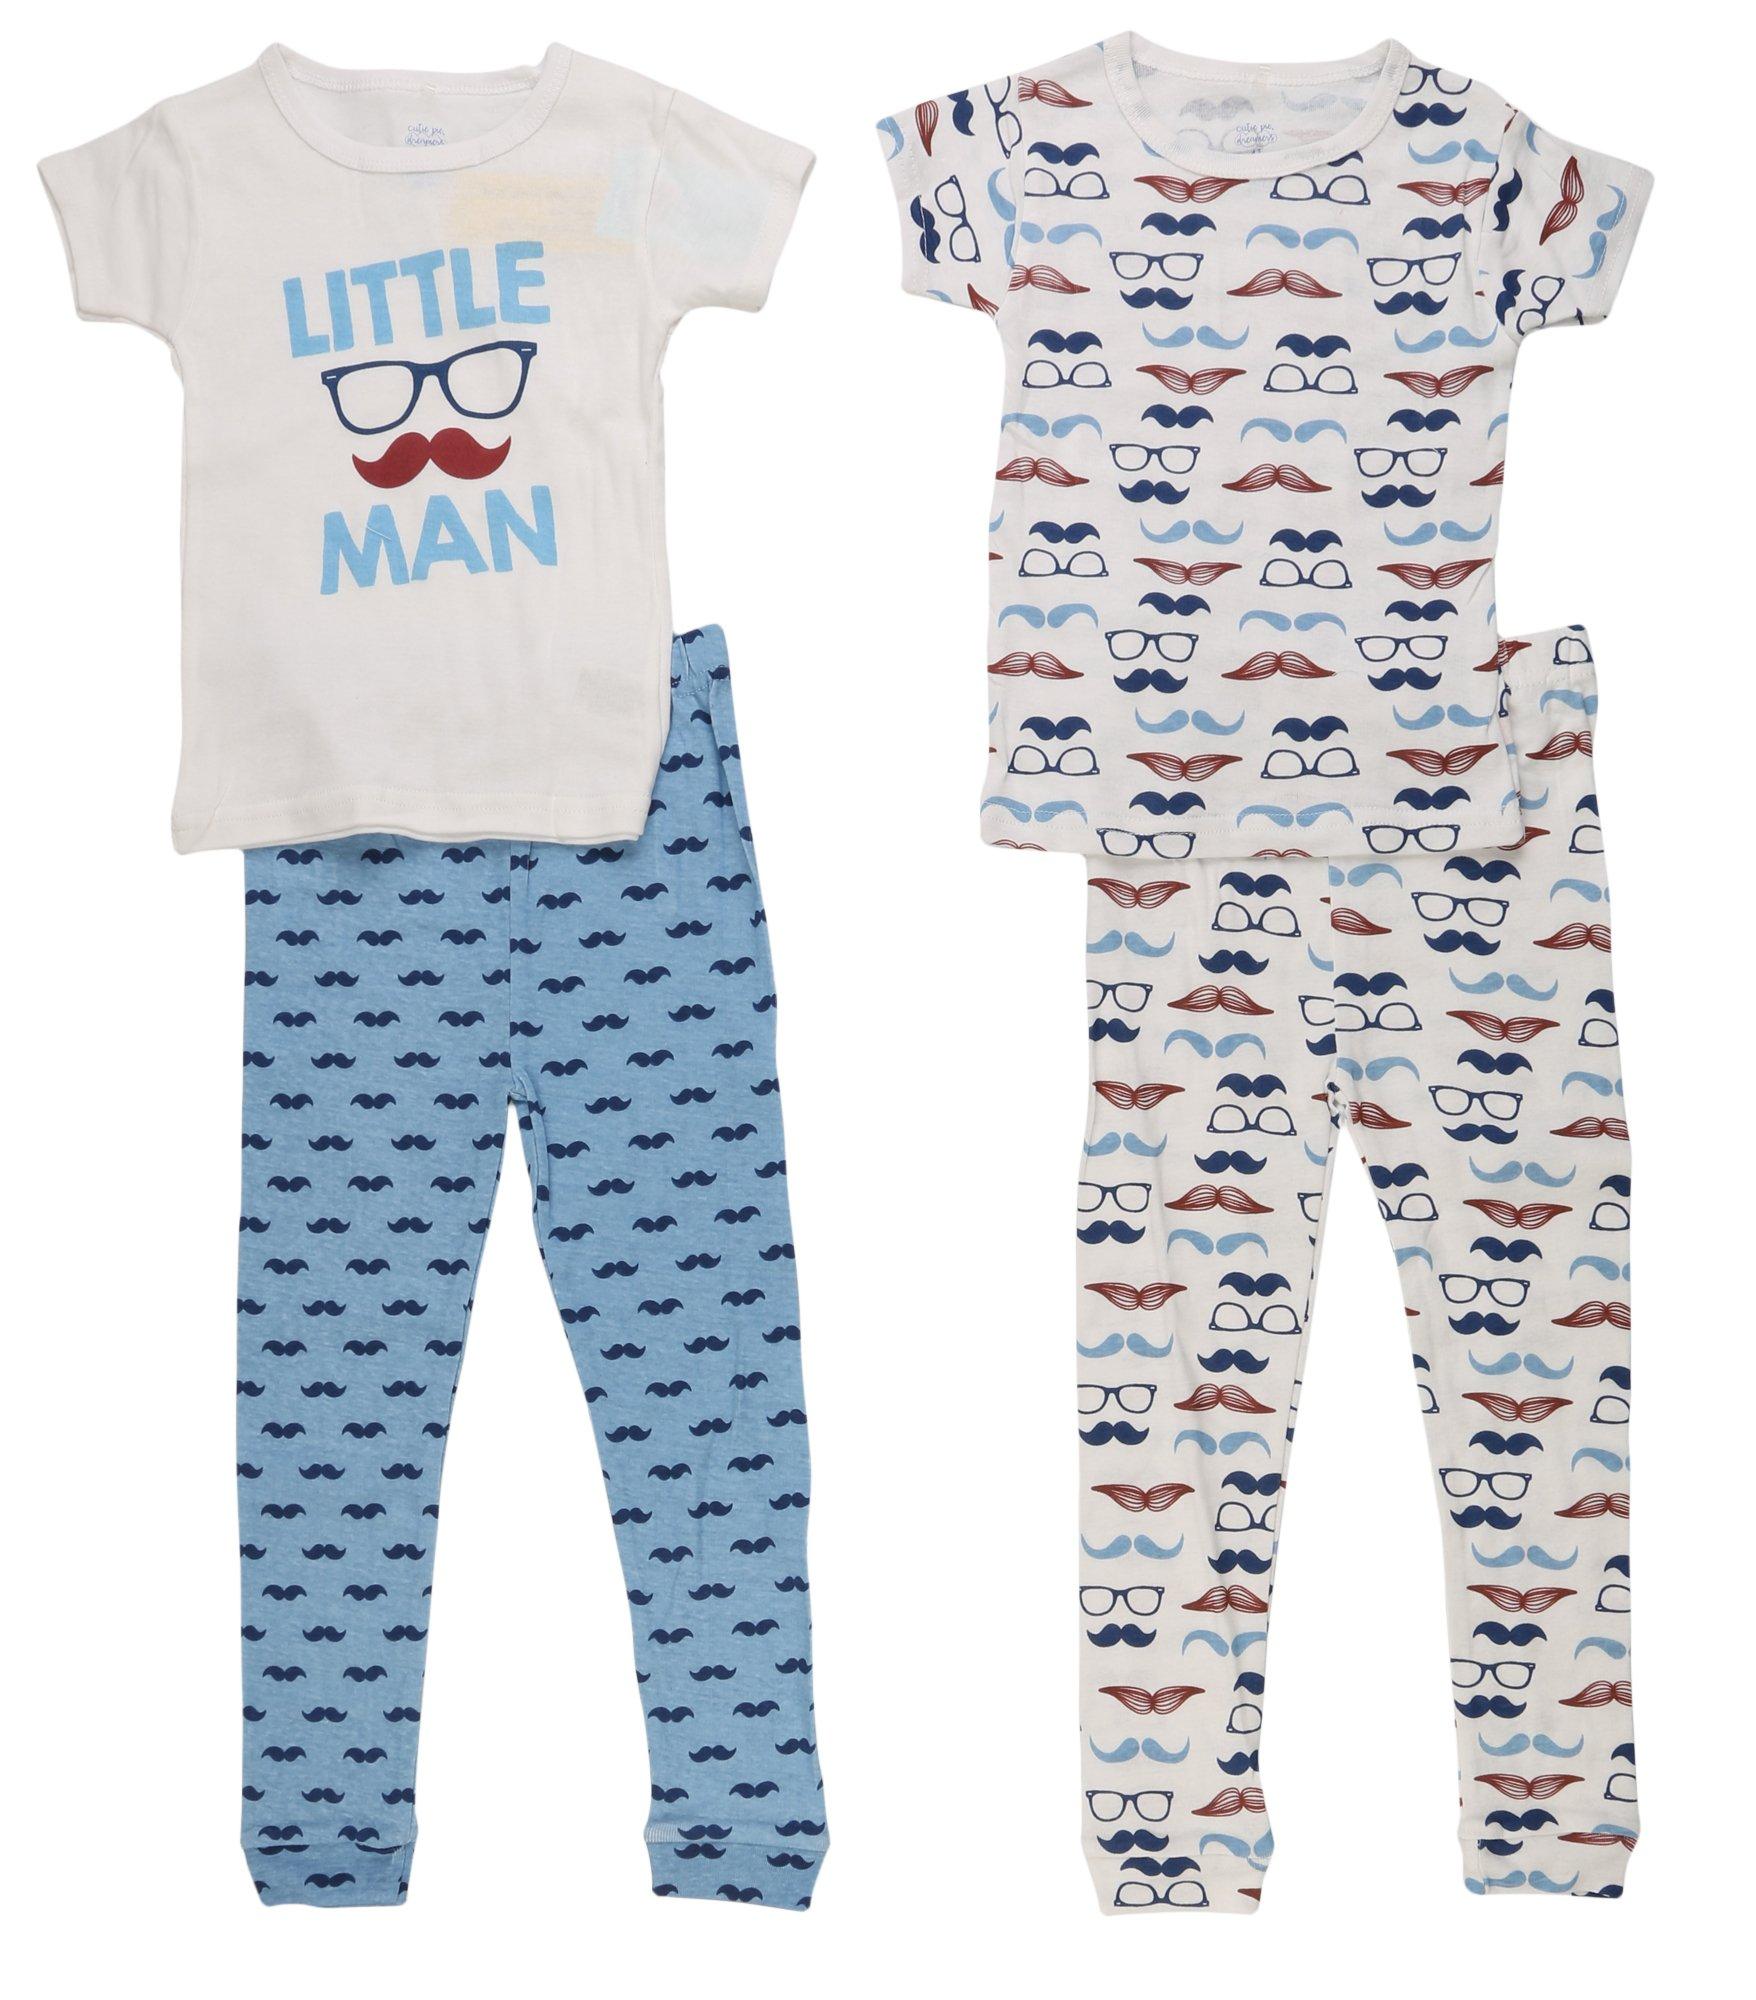 Cutie Pie Baby Toddler Boys Little Man Match